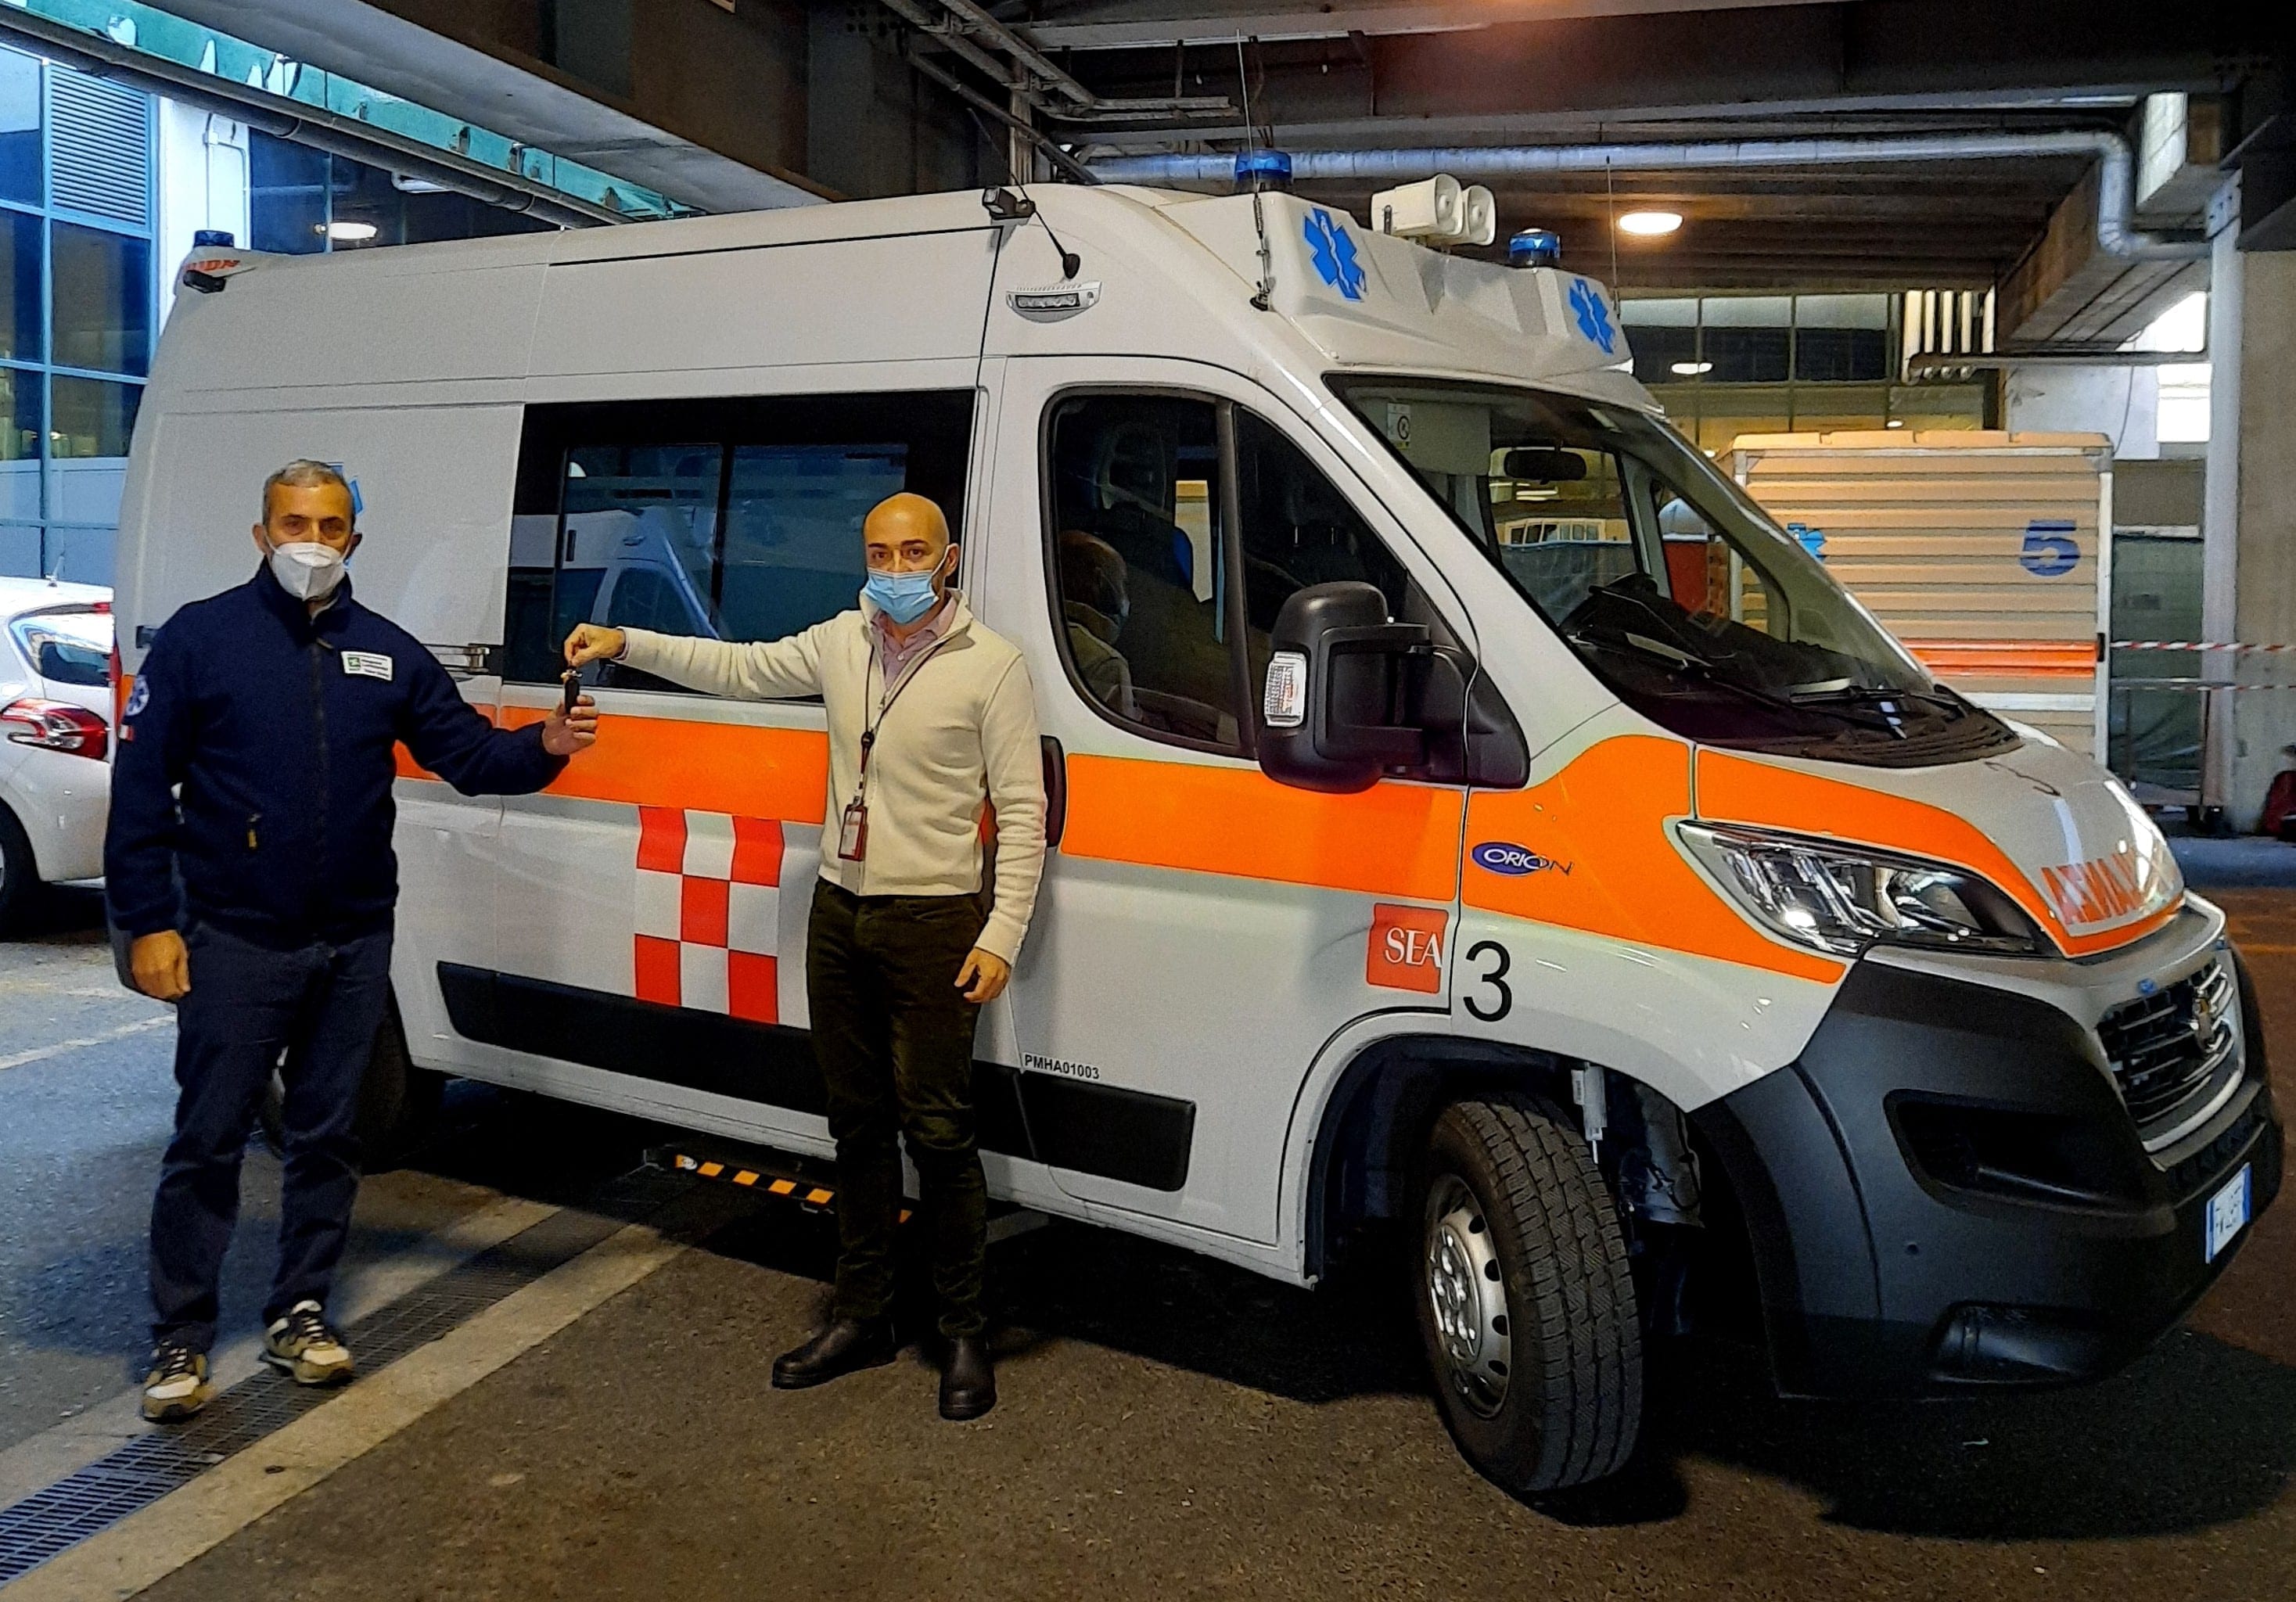 Sea offre ambulanza a Asst Valle Olona (ospedale Saronno e Busto)